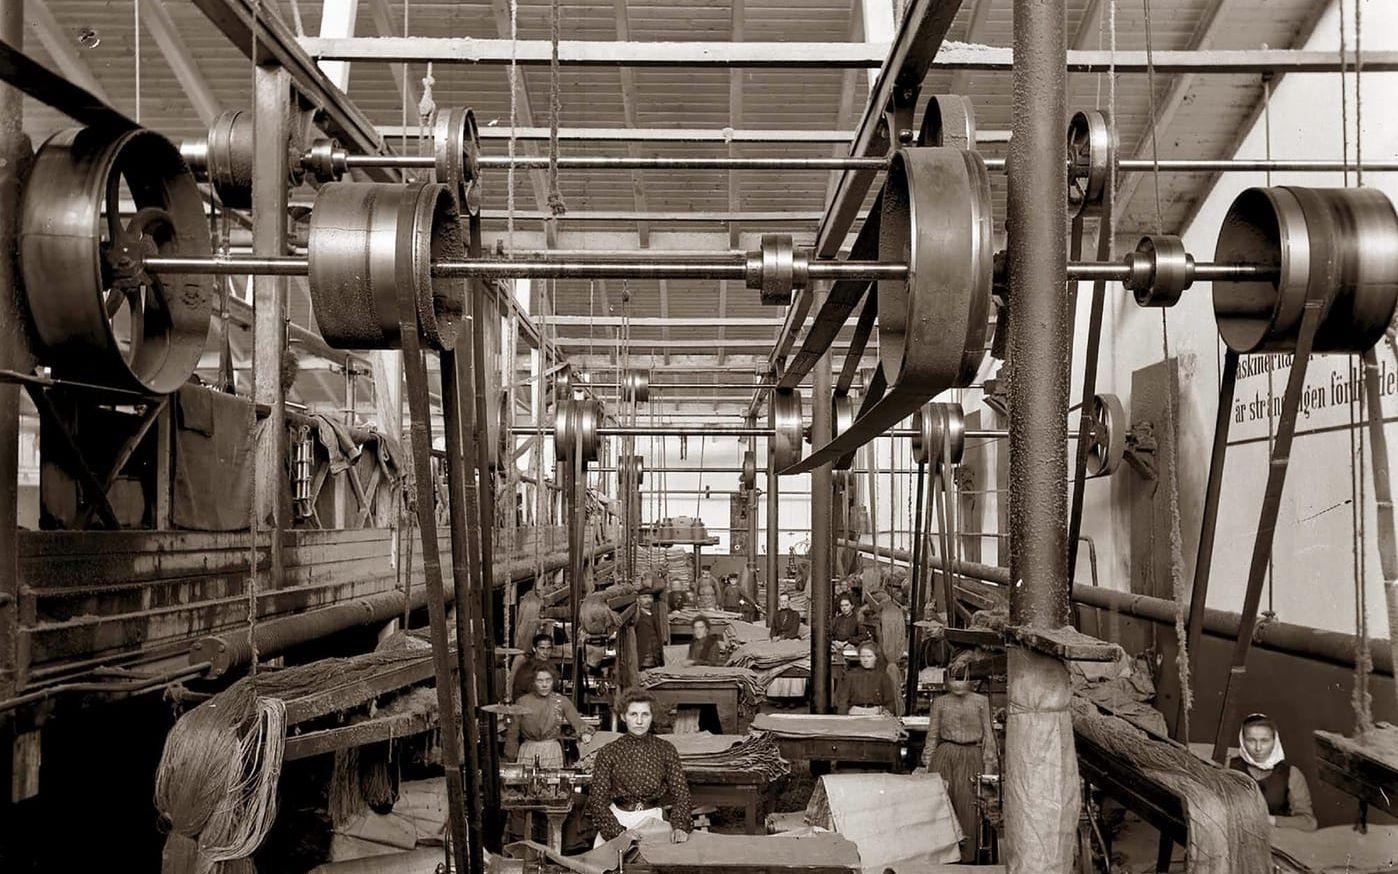 Inifrån fabriken. I sysalen syddes jutesäckar av tygmaterialet som vävts i fabriken. Bilden är från tidigt 1900-tal.